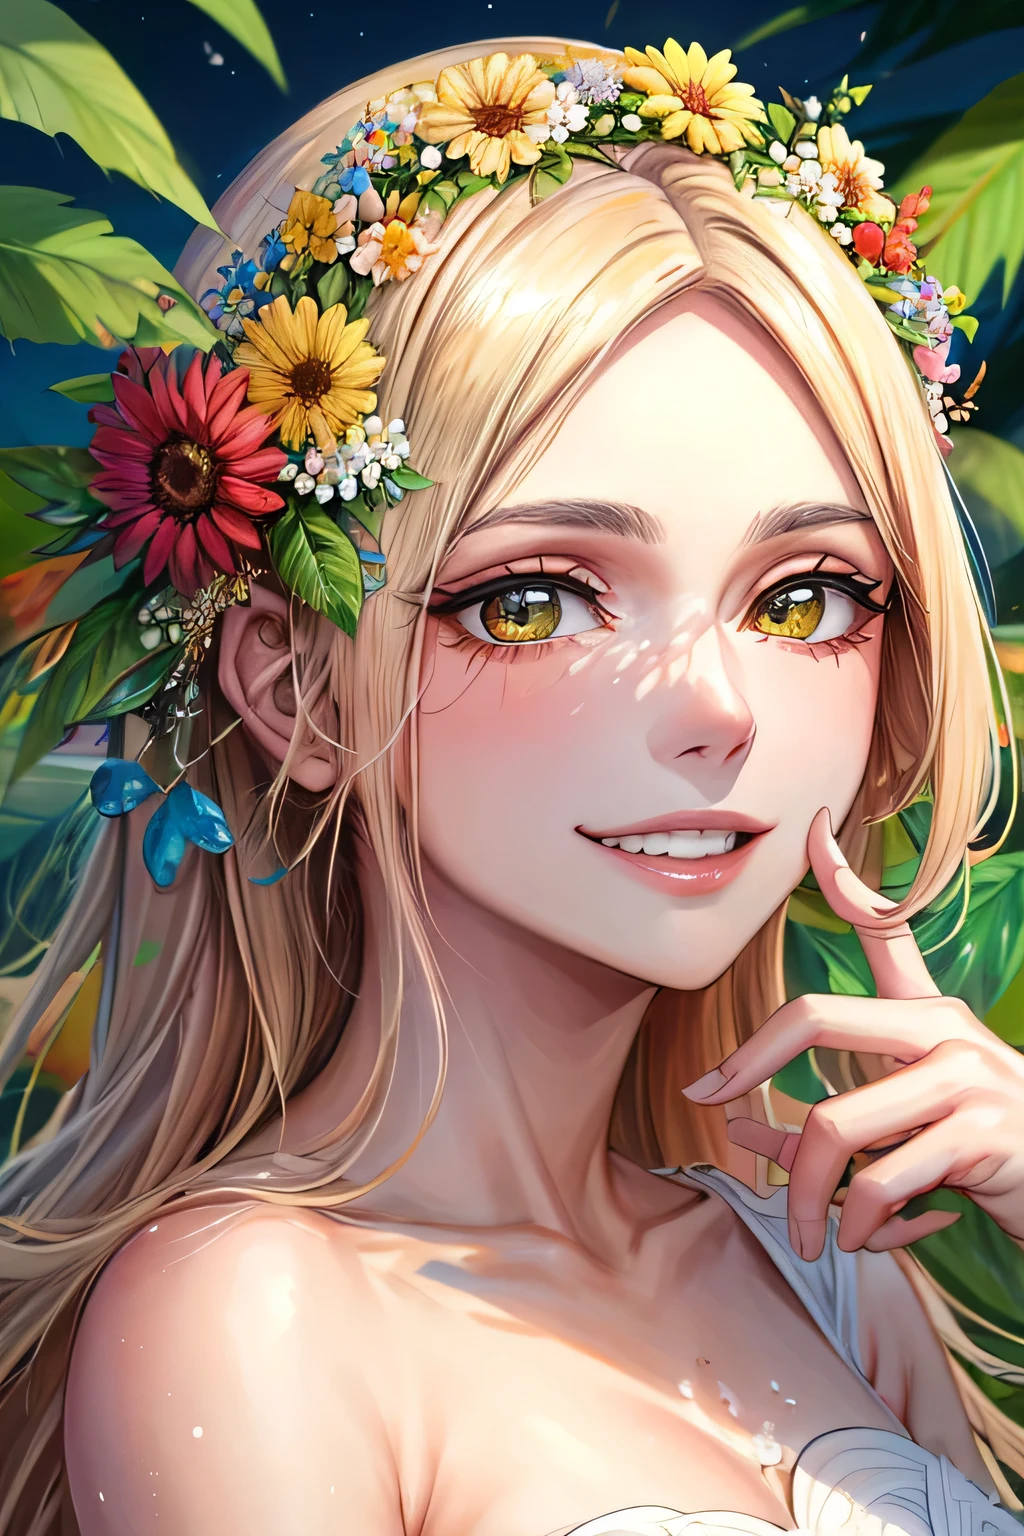 最优质的艺术品, 1 名女孩, ((独自的) 与天然化妆品, 对于脸, 幸福地微笑着, 常见的美丽花朵背景